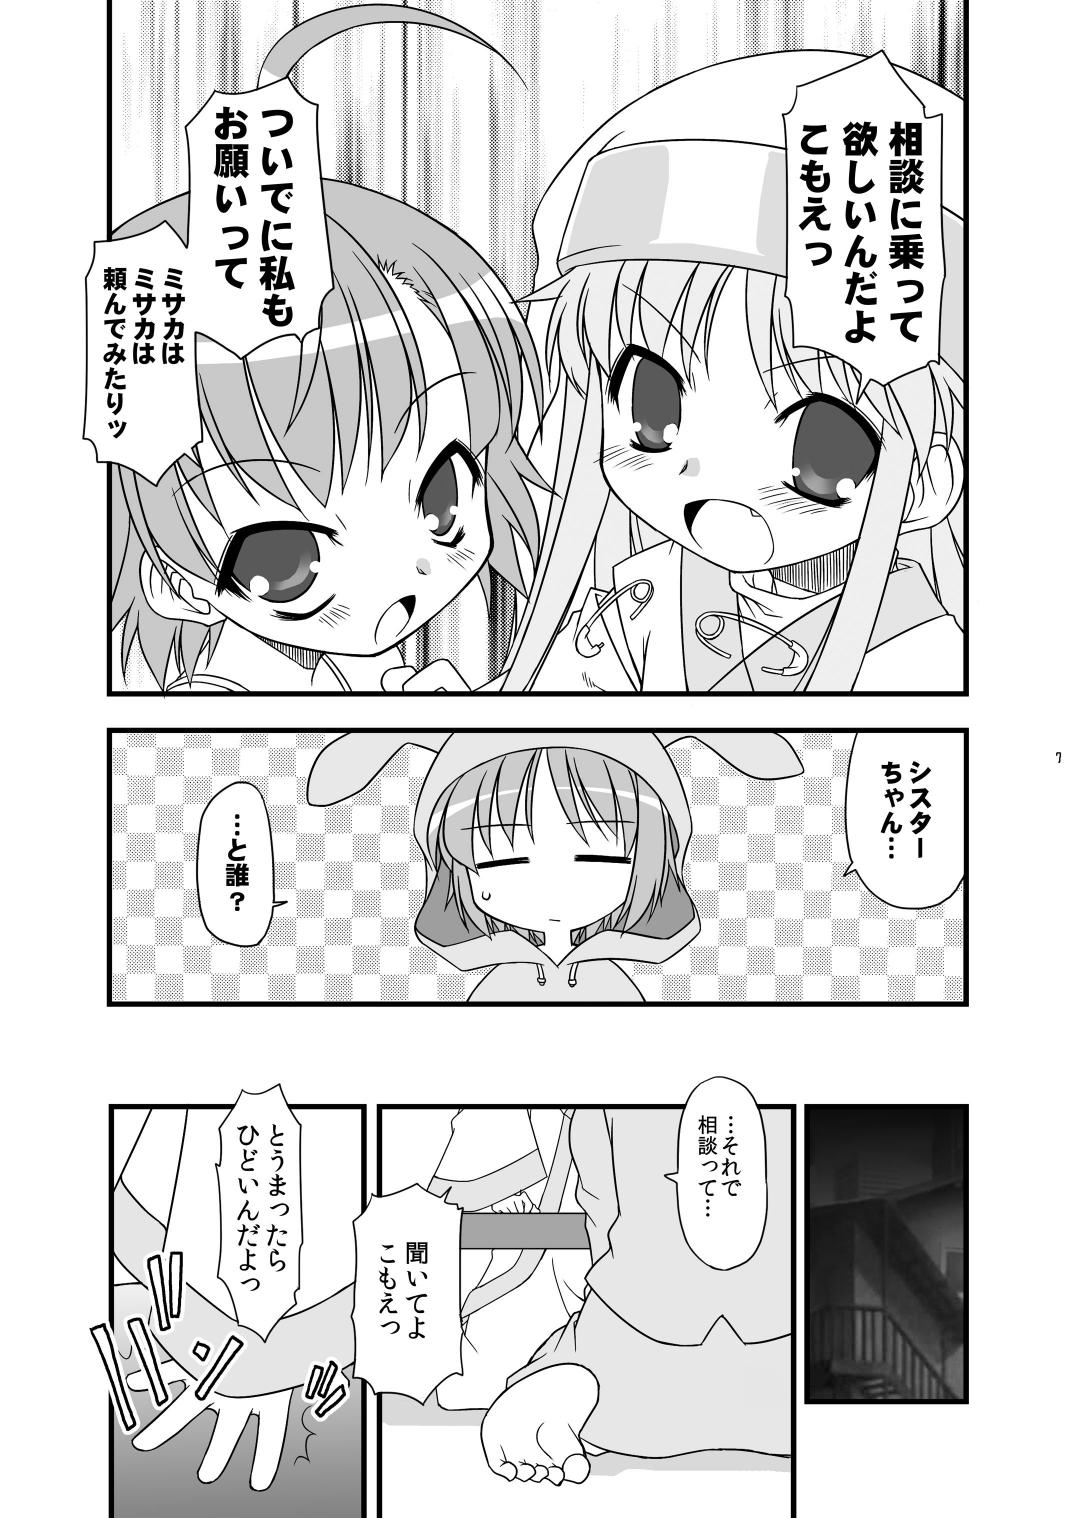 Cojiendo KA+SHI+MA+SHI=INDEX! - Toaru majutsu no index Banheiro - Page 8